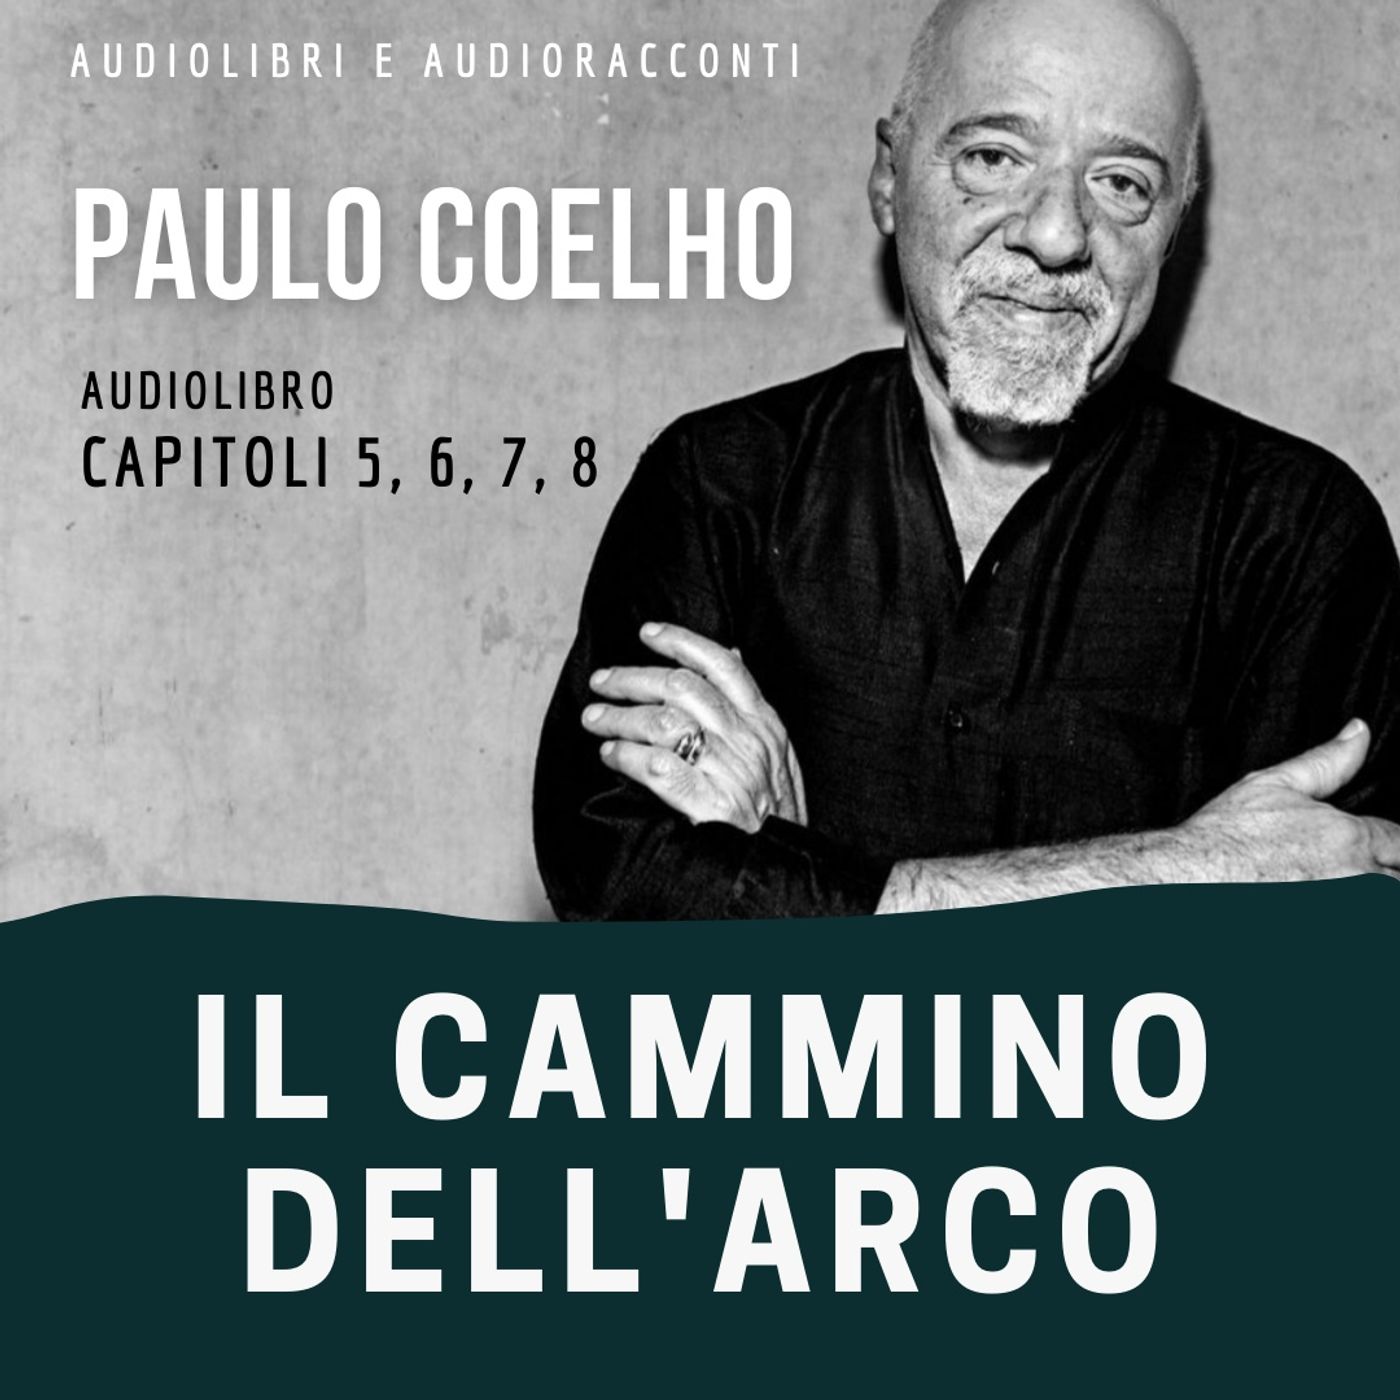 Il cammino dell'arco di Paulo Coelho [capitoli 5, 6, 7, 8] - Audiolibro